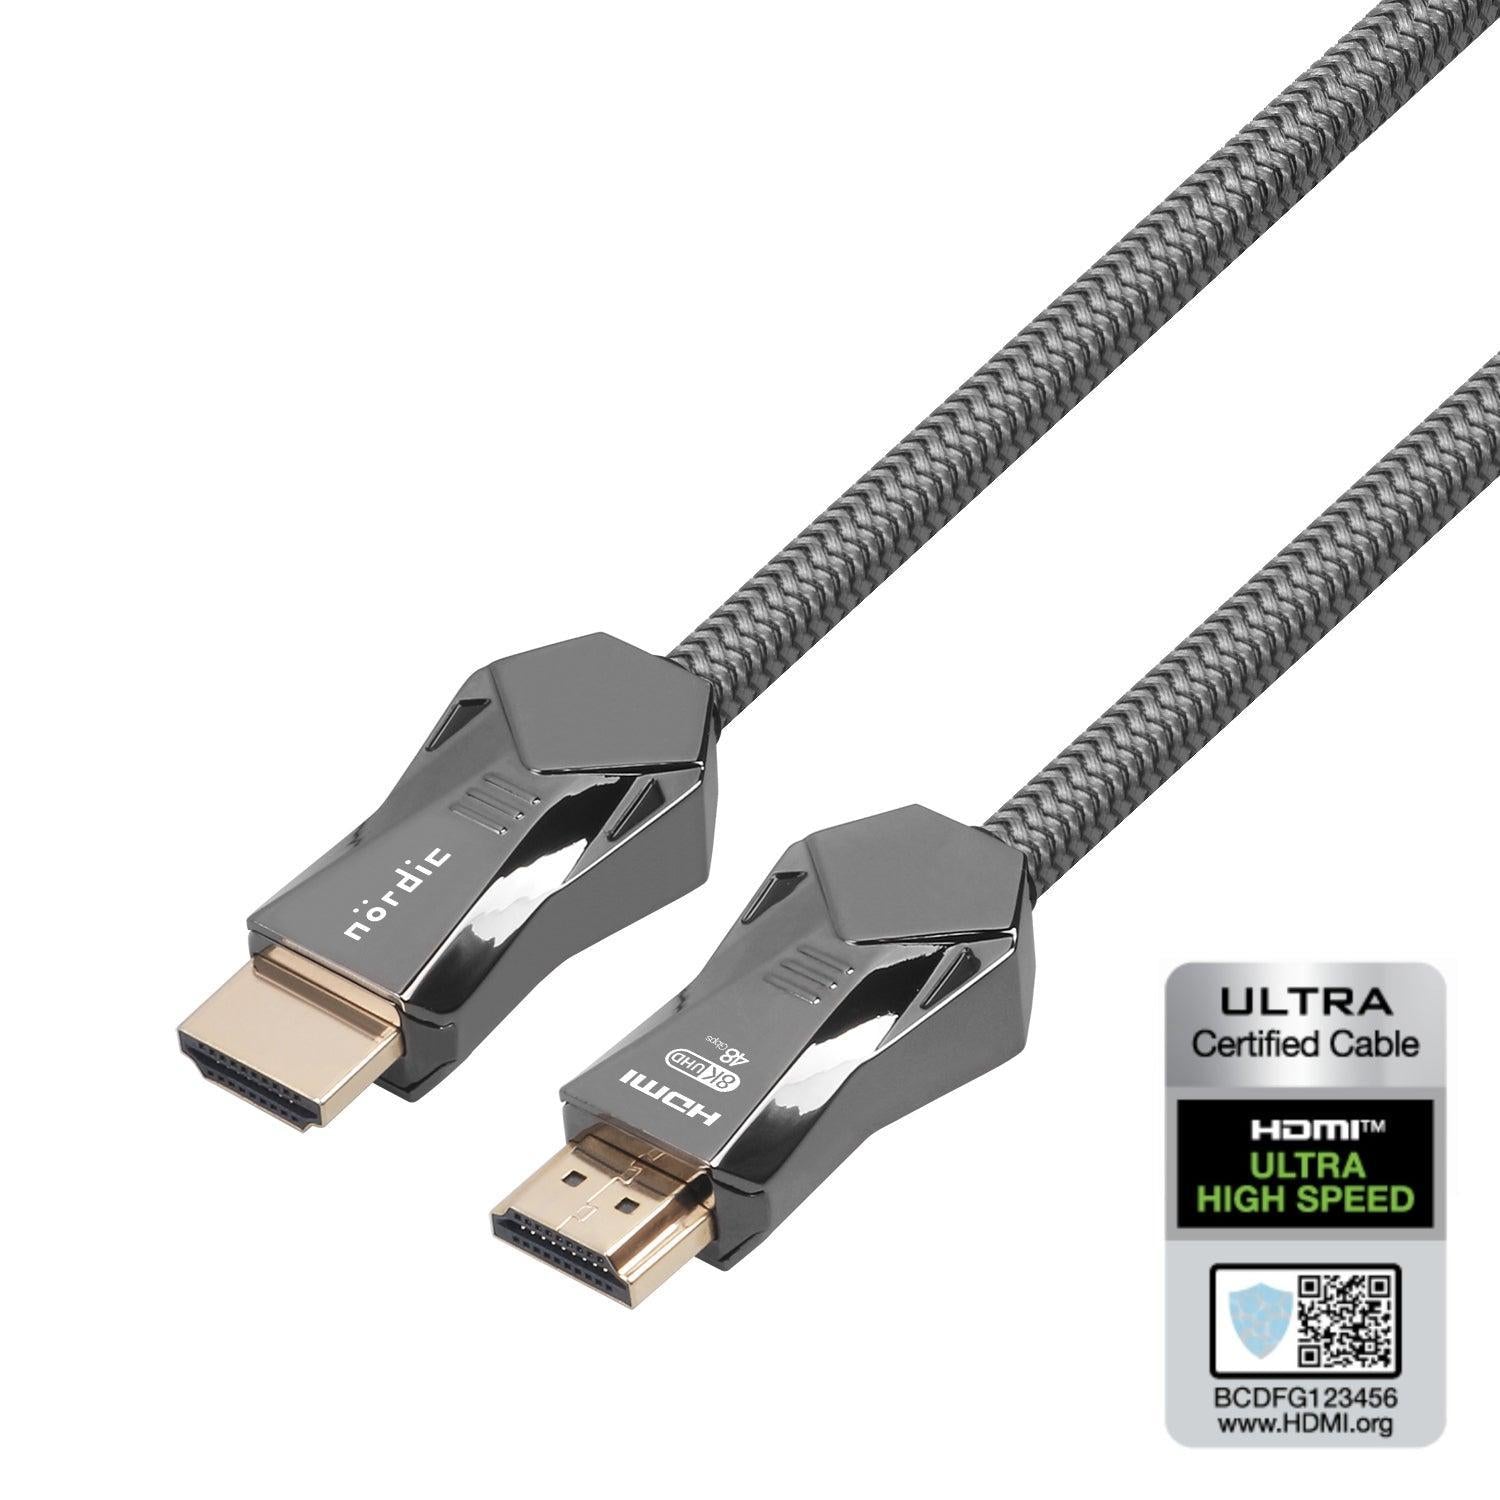 NORDIC CERTIFICEREDE KABLER 2m Ultra High Speed HDMI 2.1 8K 60Hz 4K 120Hz 48Gbps Dynamic HDR eARC VRR Nylon flettet kabel forgyldt